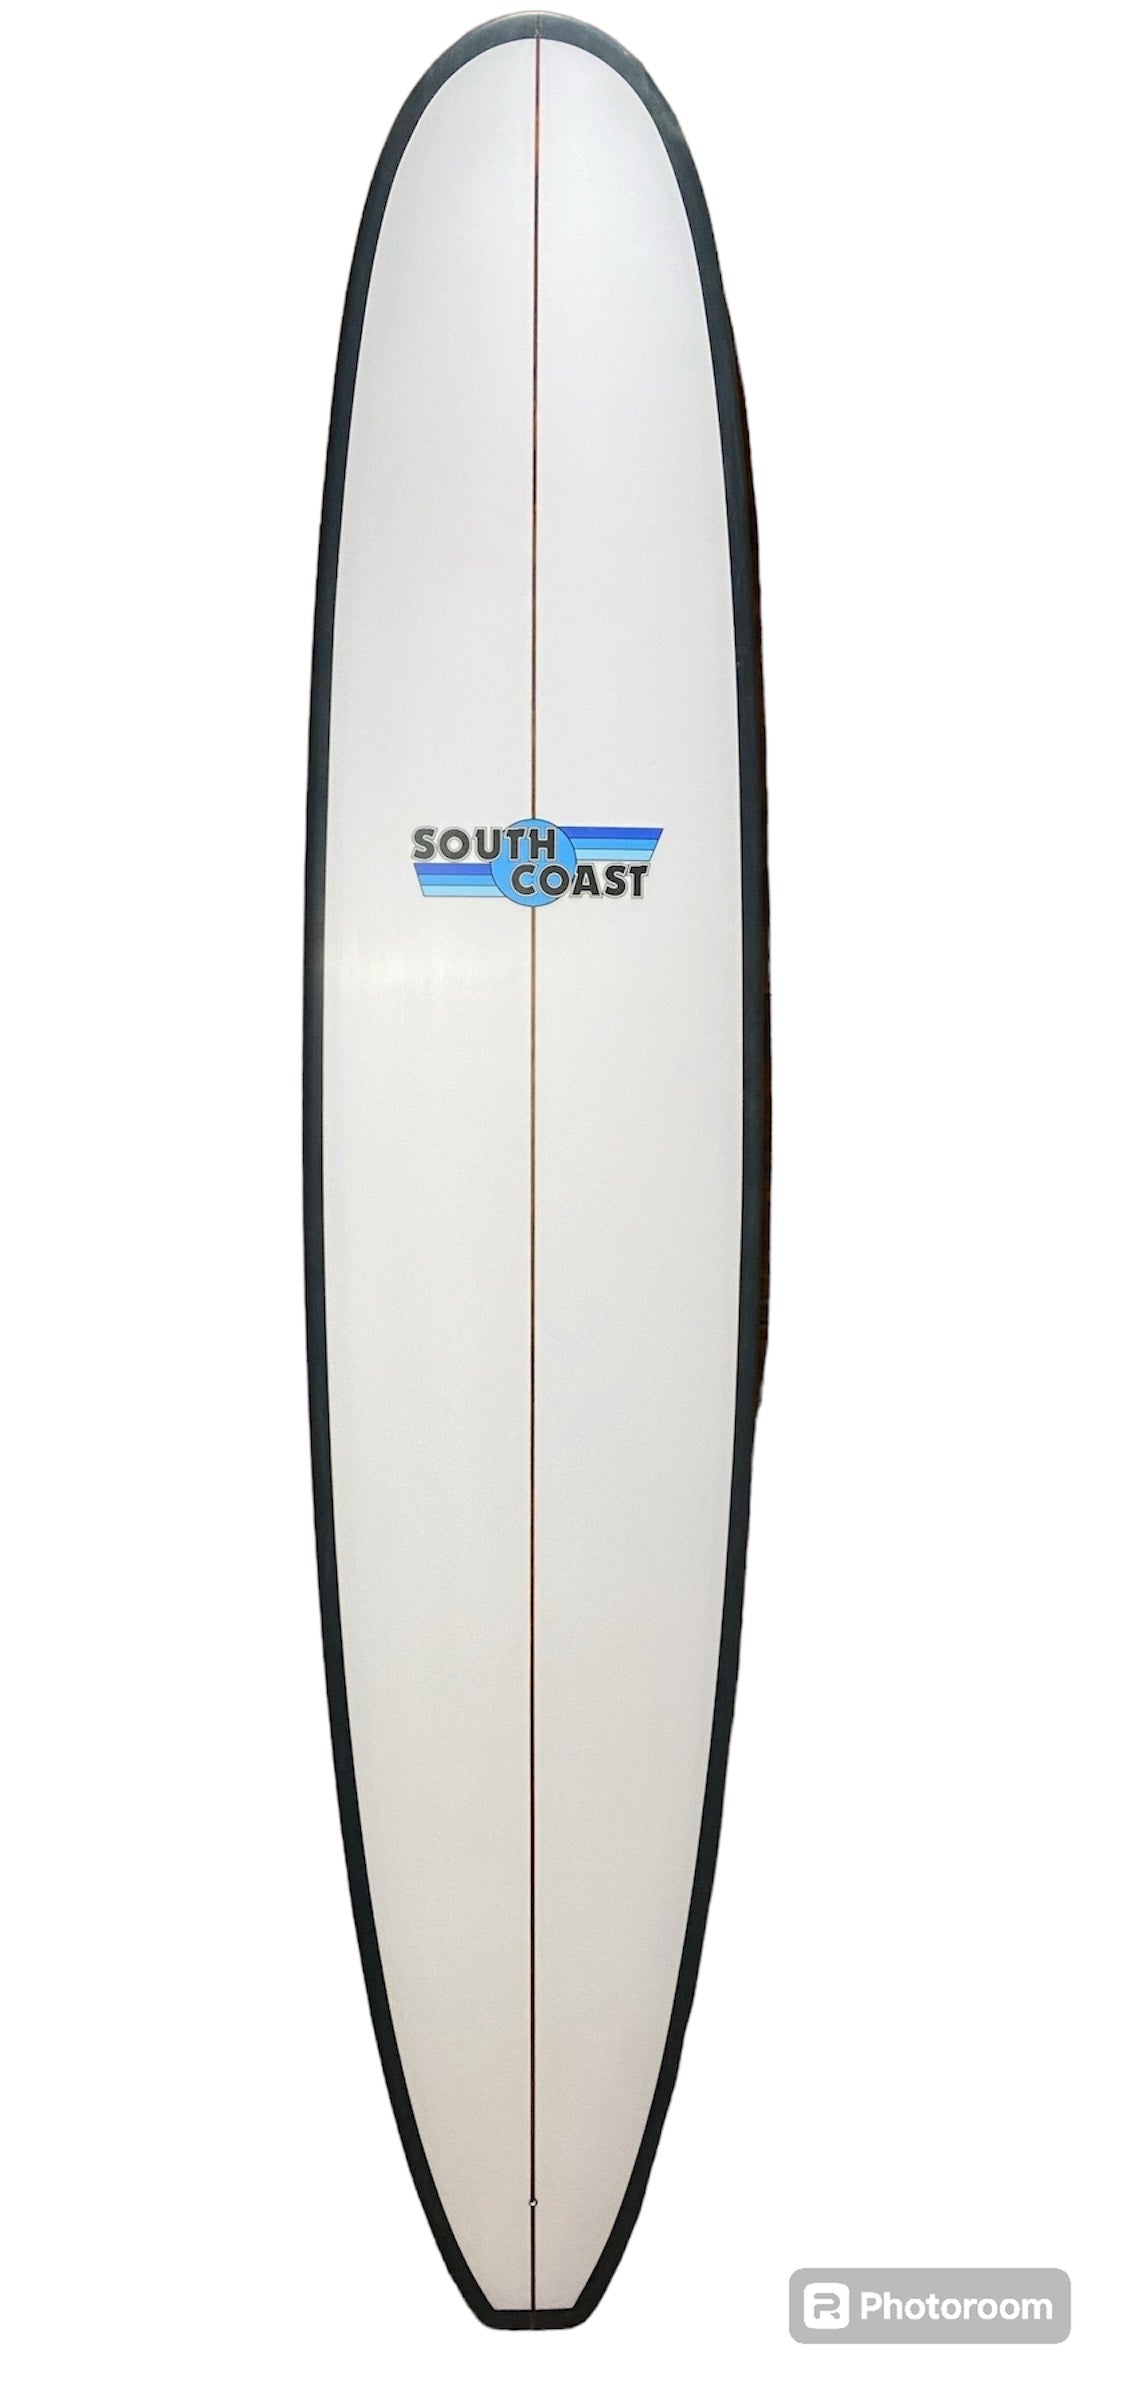 SOUTH COAST CR3 SURFBOARD 9'0”